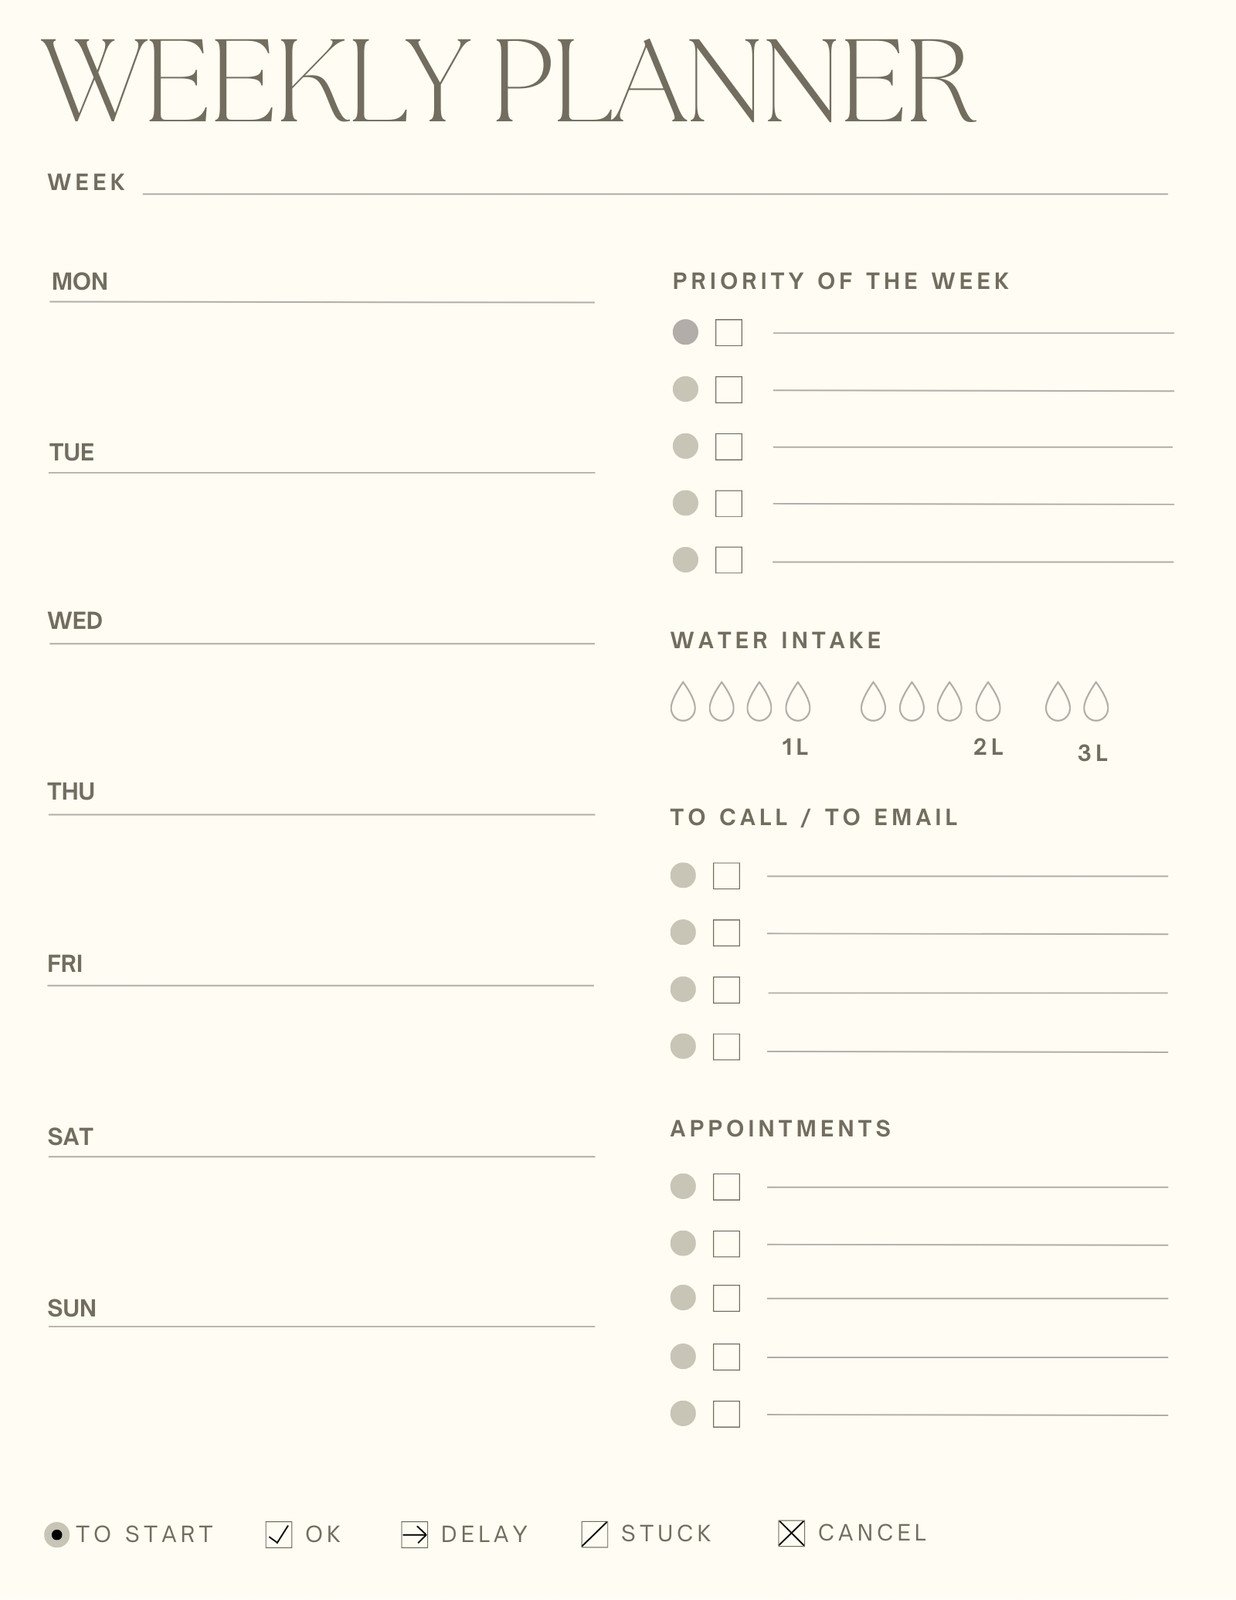 Weekly Planner Printable Landscape, Minimalist Weekly Schedule